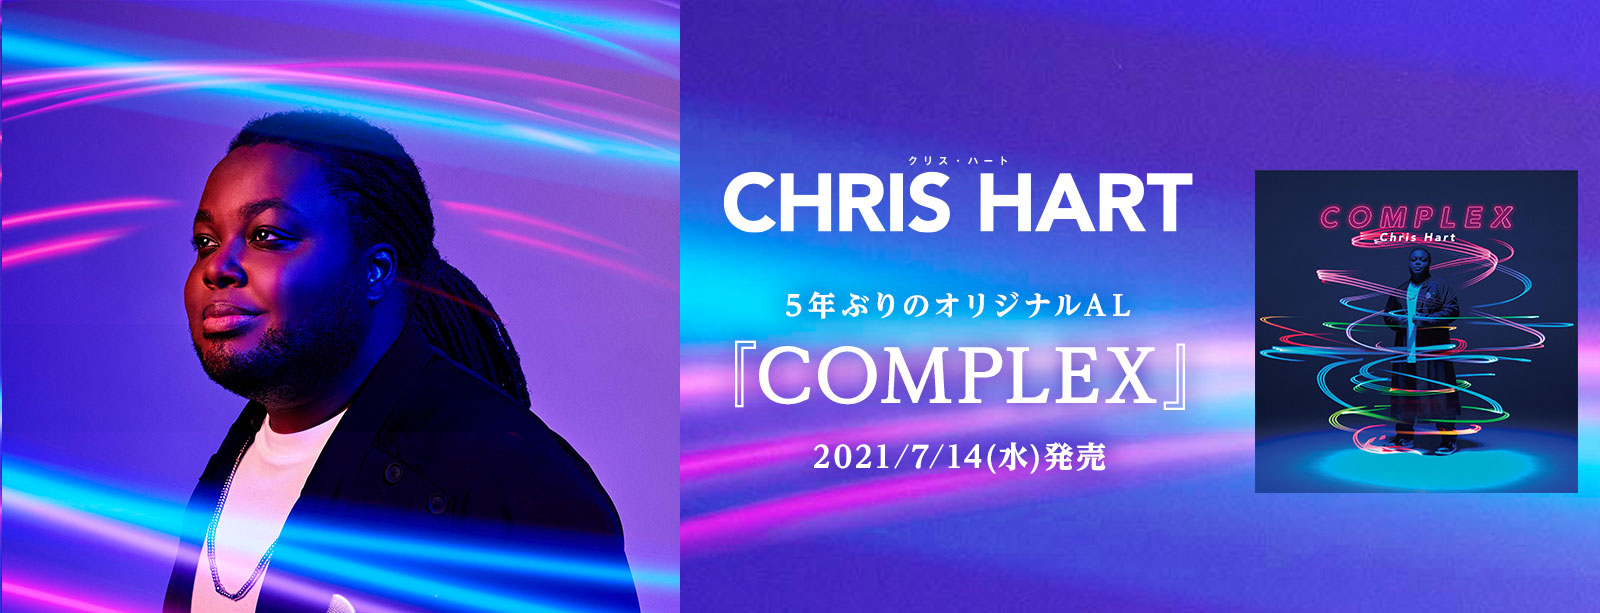 クリス ハート Official Website